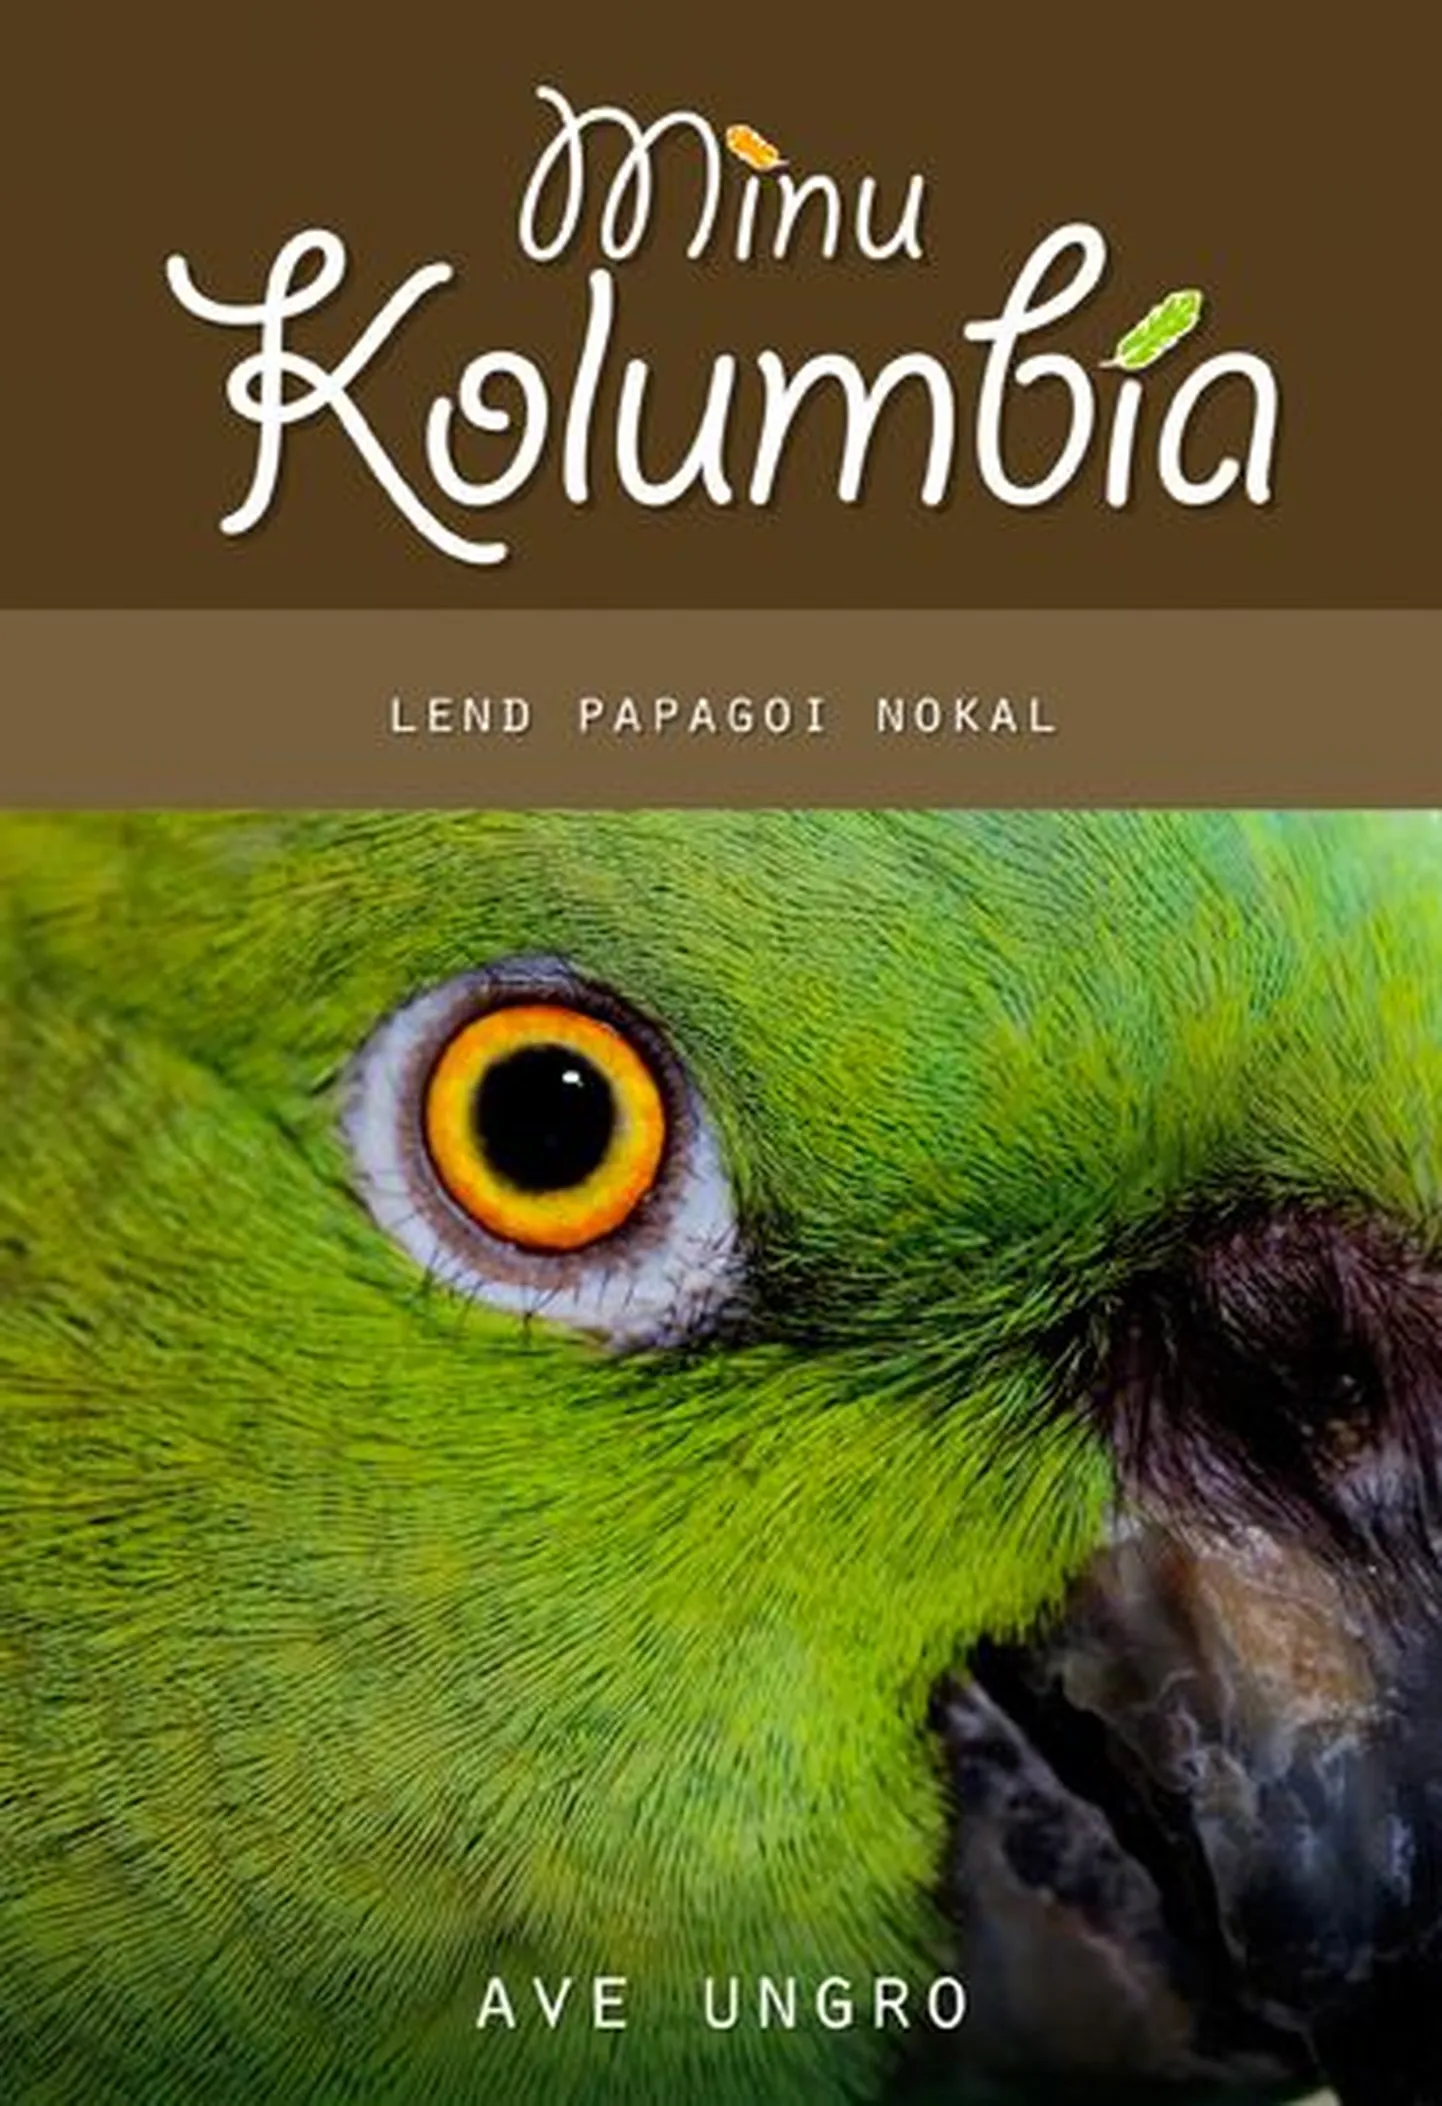 "Minu Kolumbia. Lend papagoi nokal".